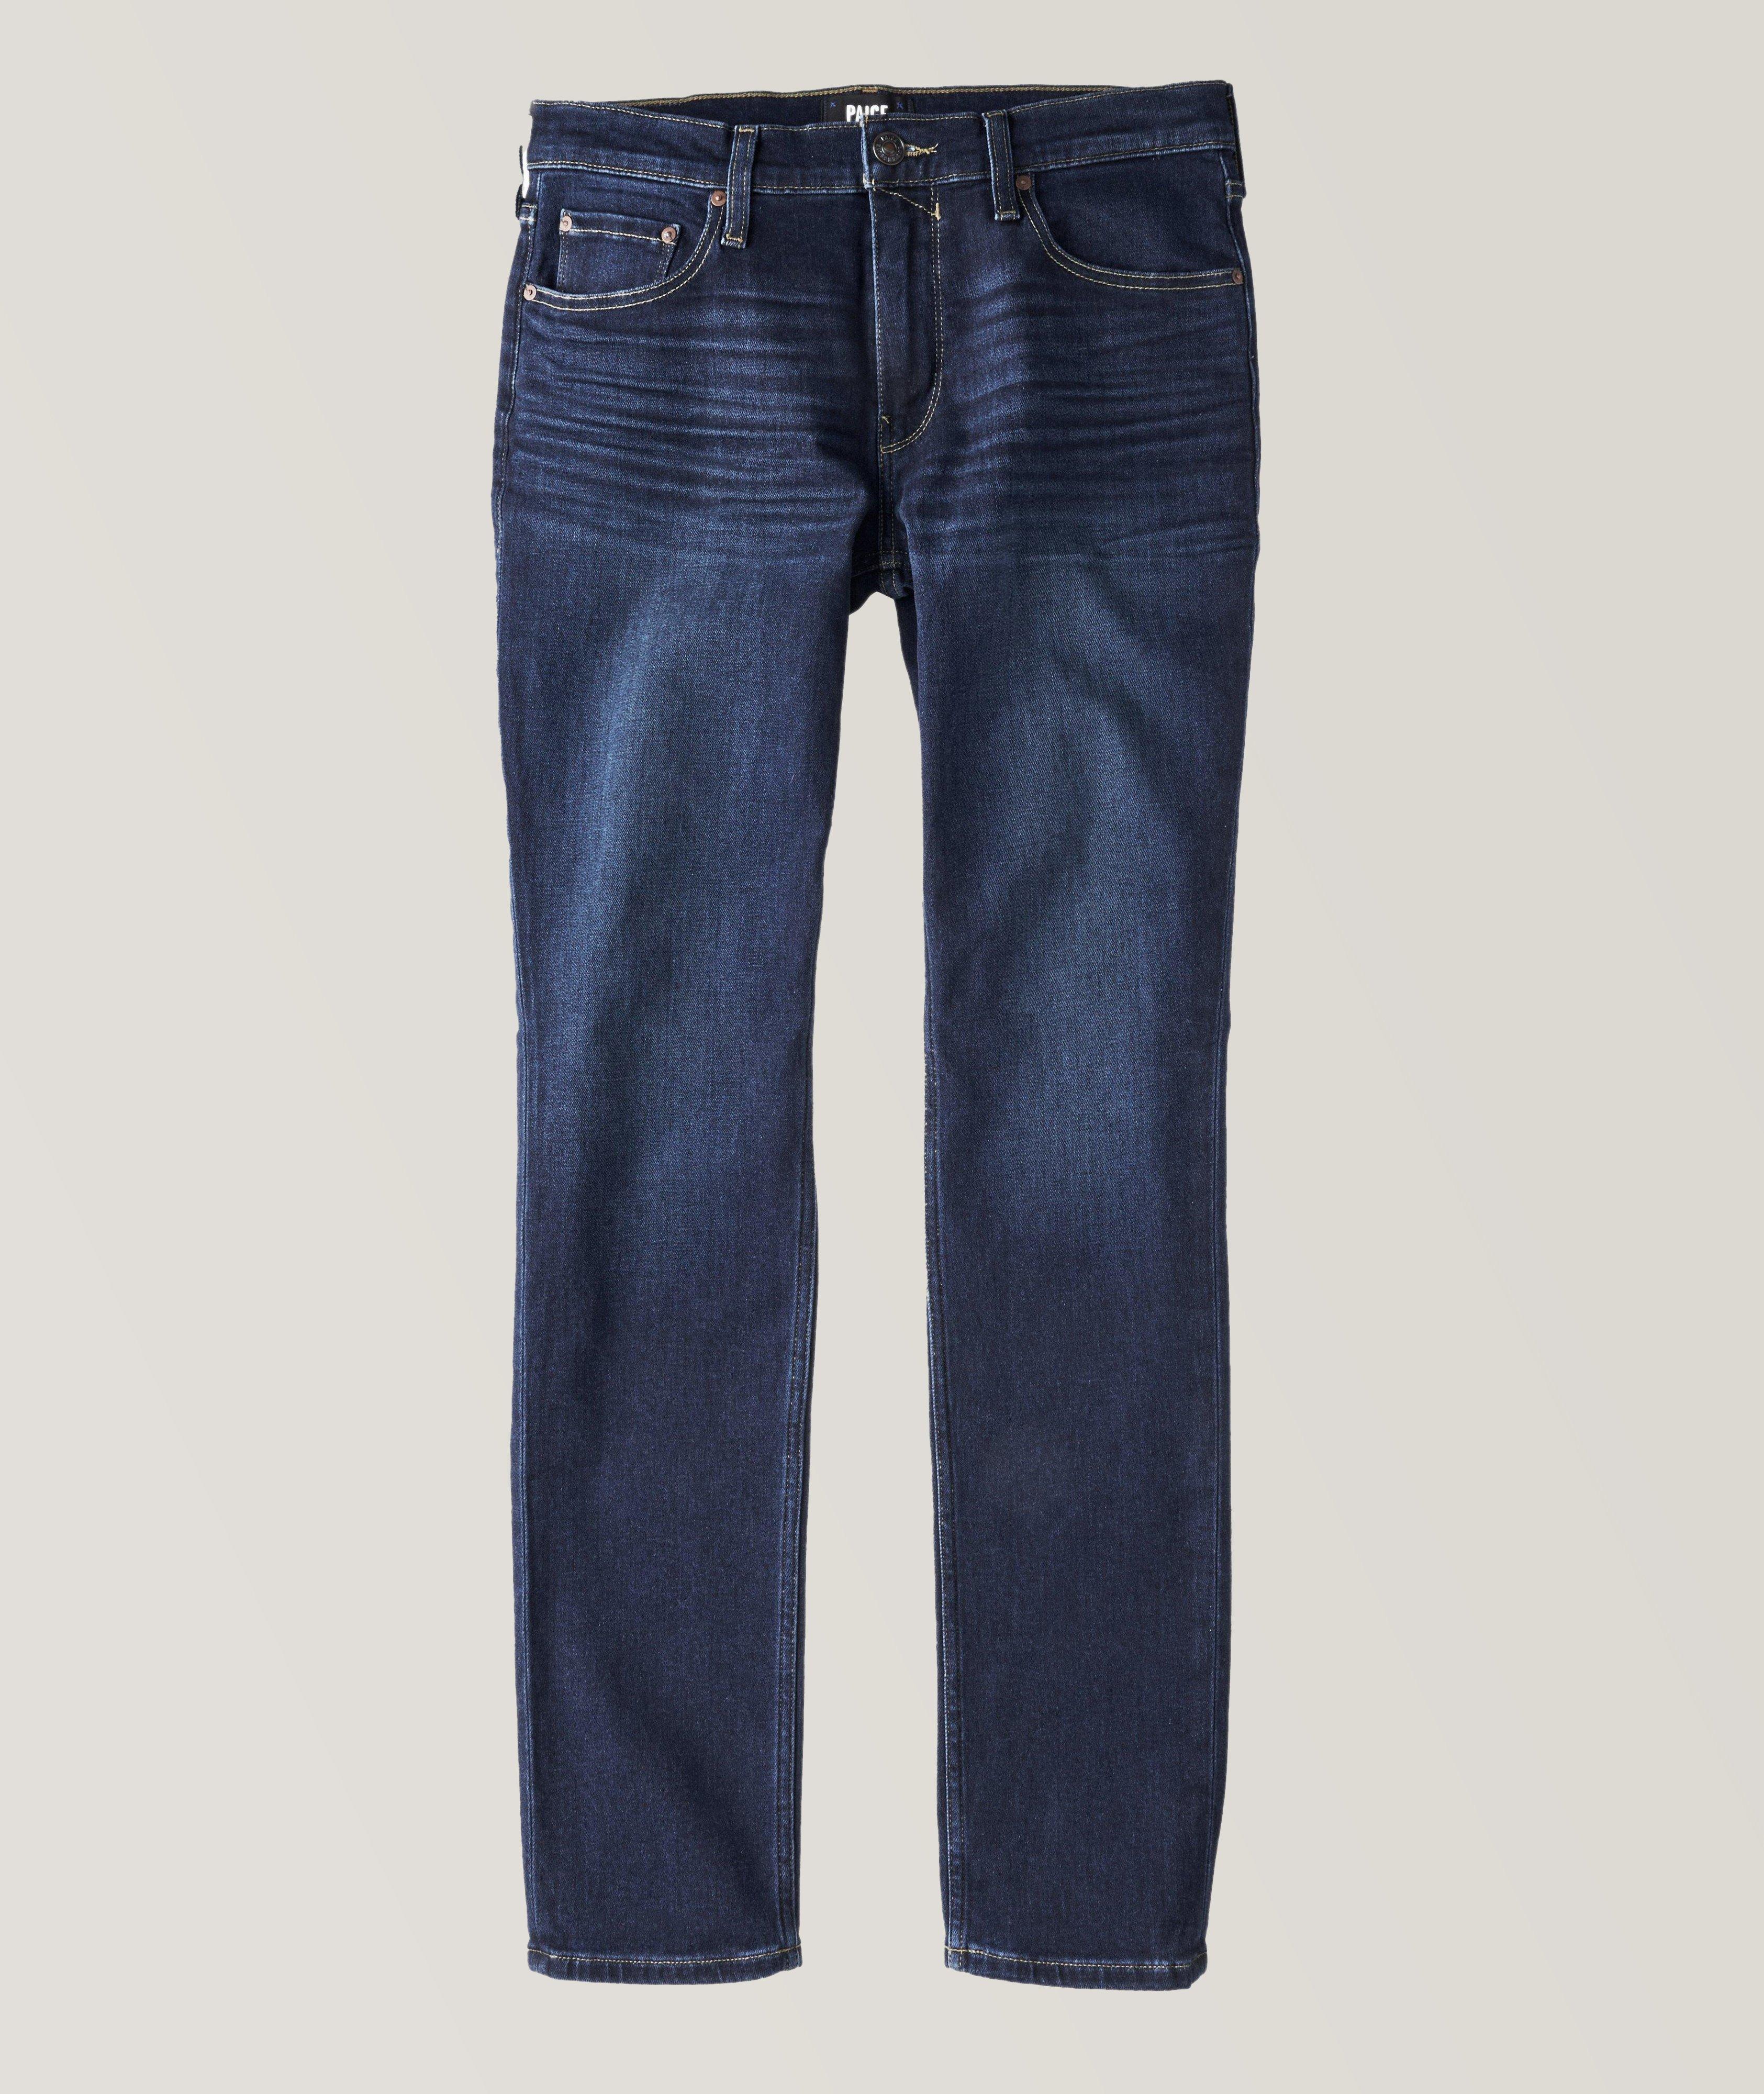 Lennox Slim-Fit Transcend Vintage Jeans image 0